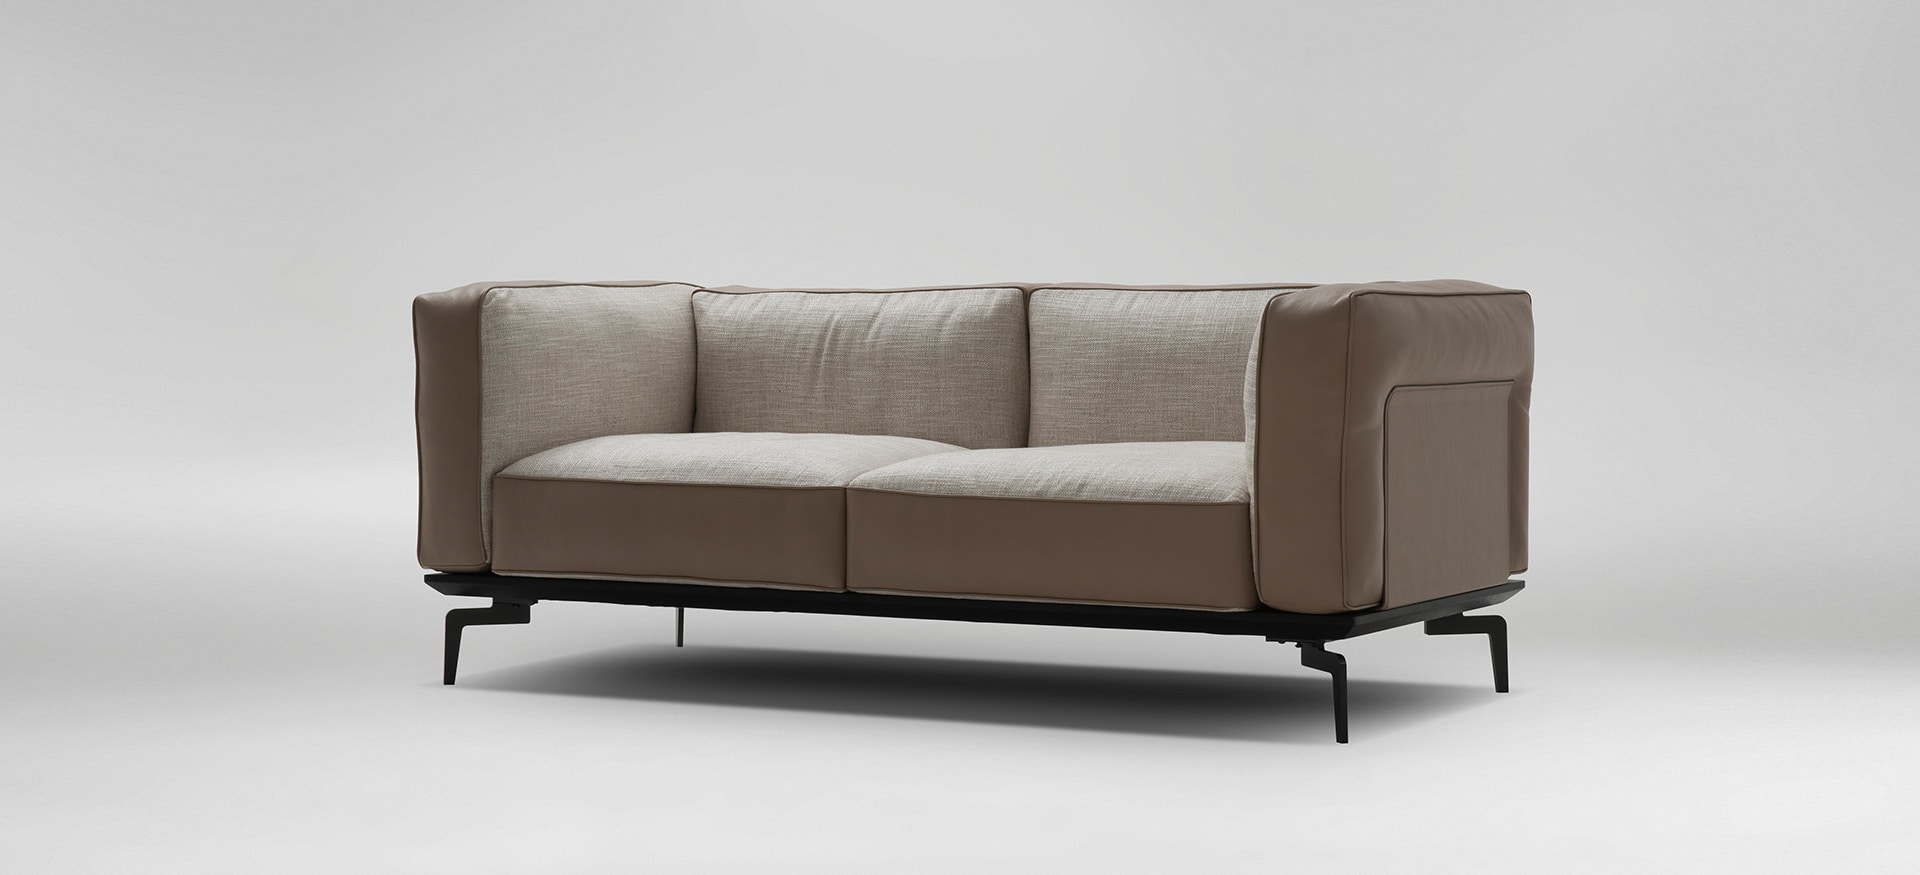 avalon italian leather sofa